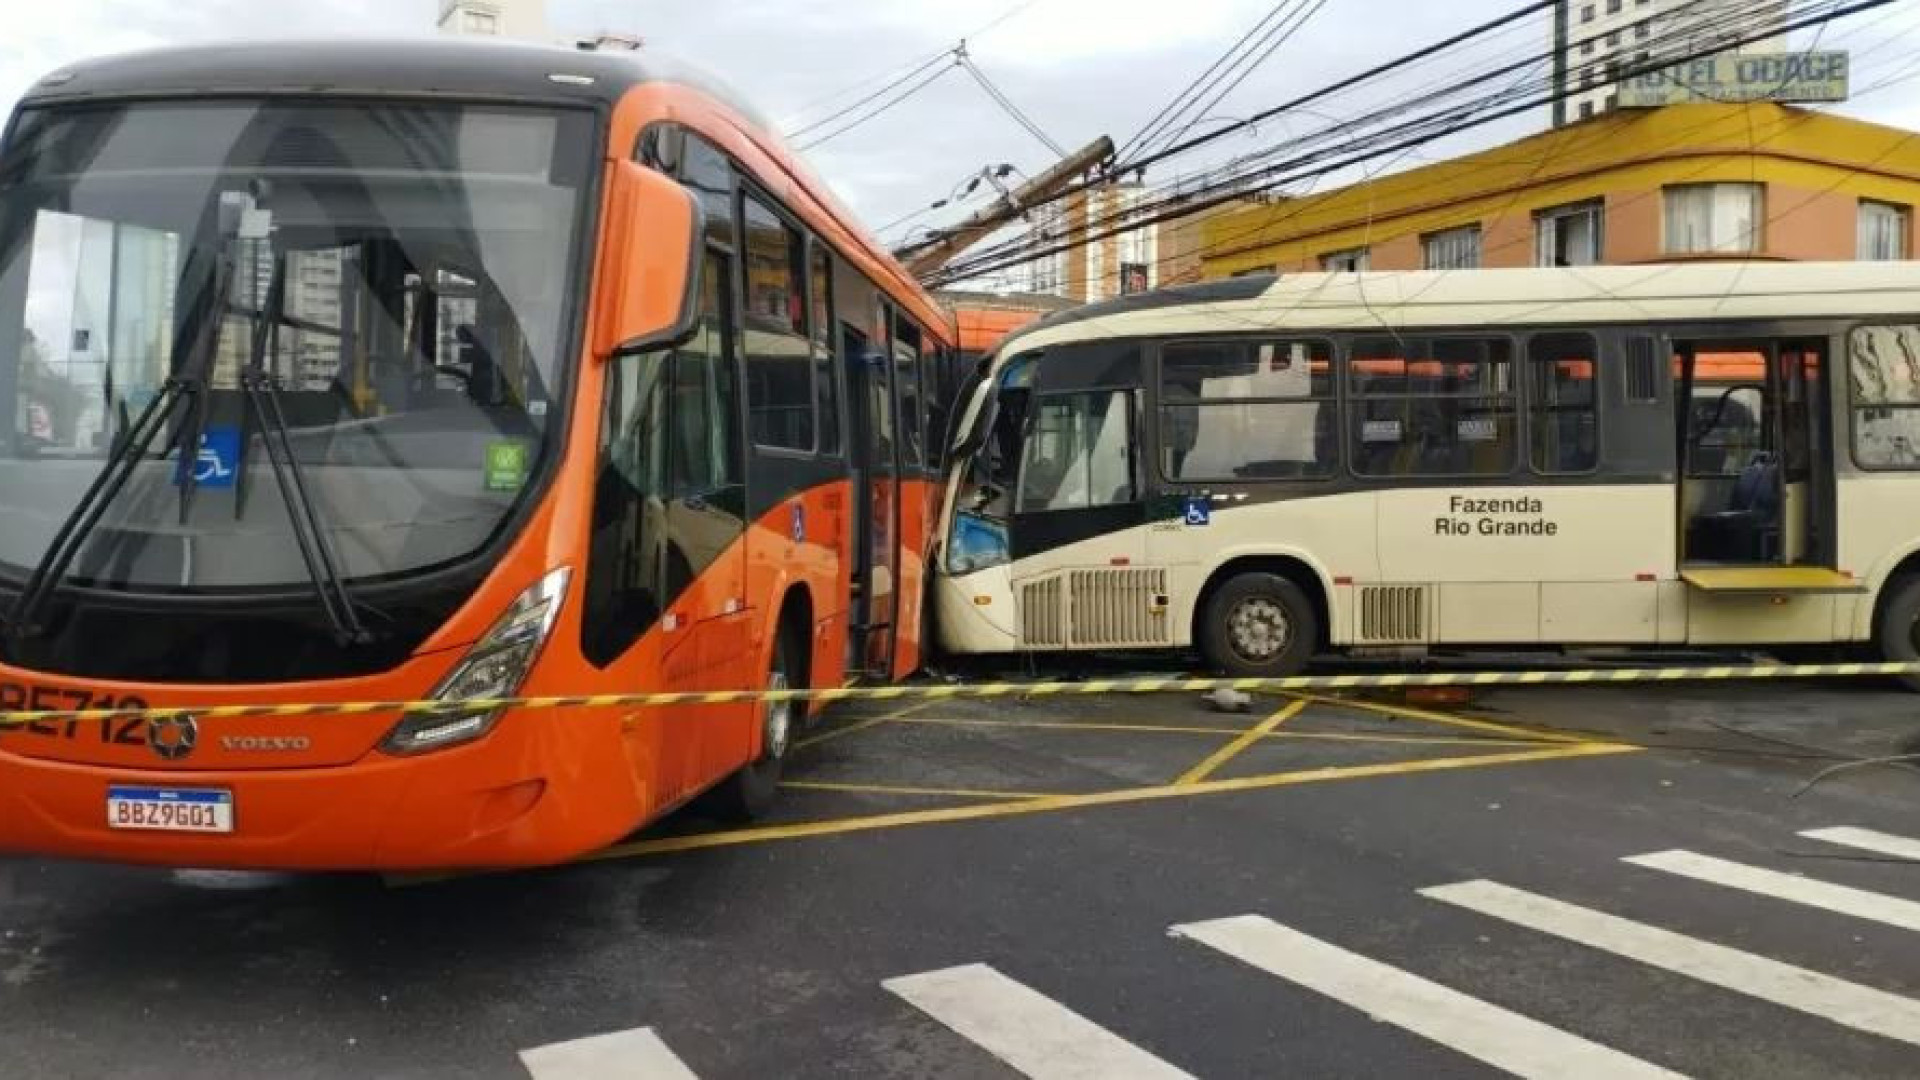 Batida entre dois ônibus em Curitiba (PR) deixa 40 feridos